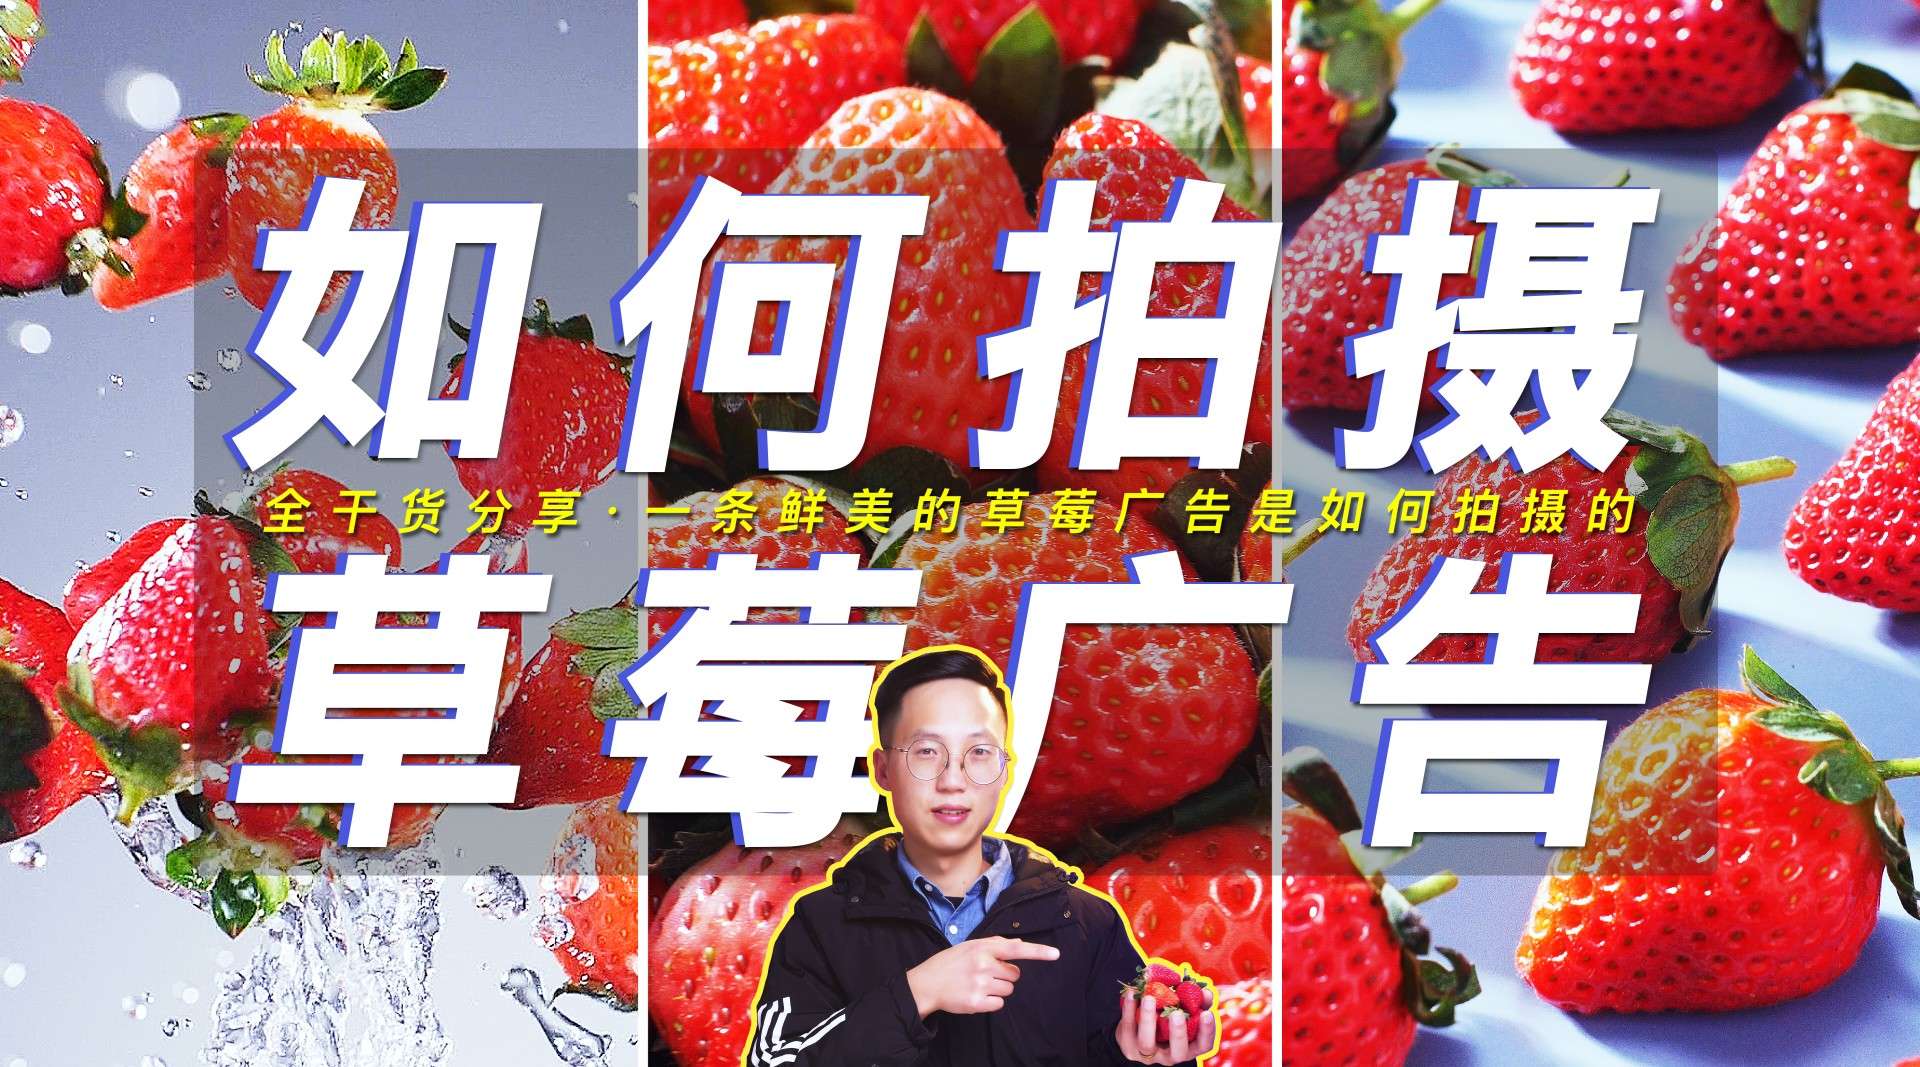 【宇哥幕后】10分钟学会如何拍摄一条阳光鲜美的草莓广告？